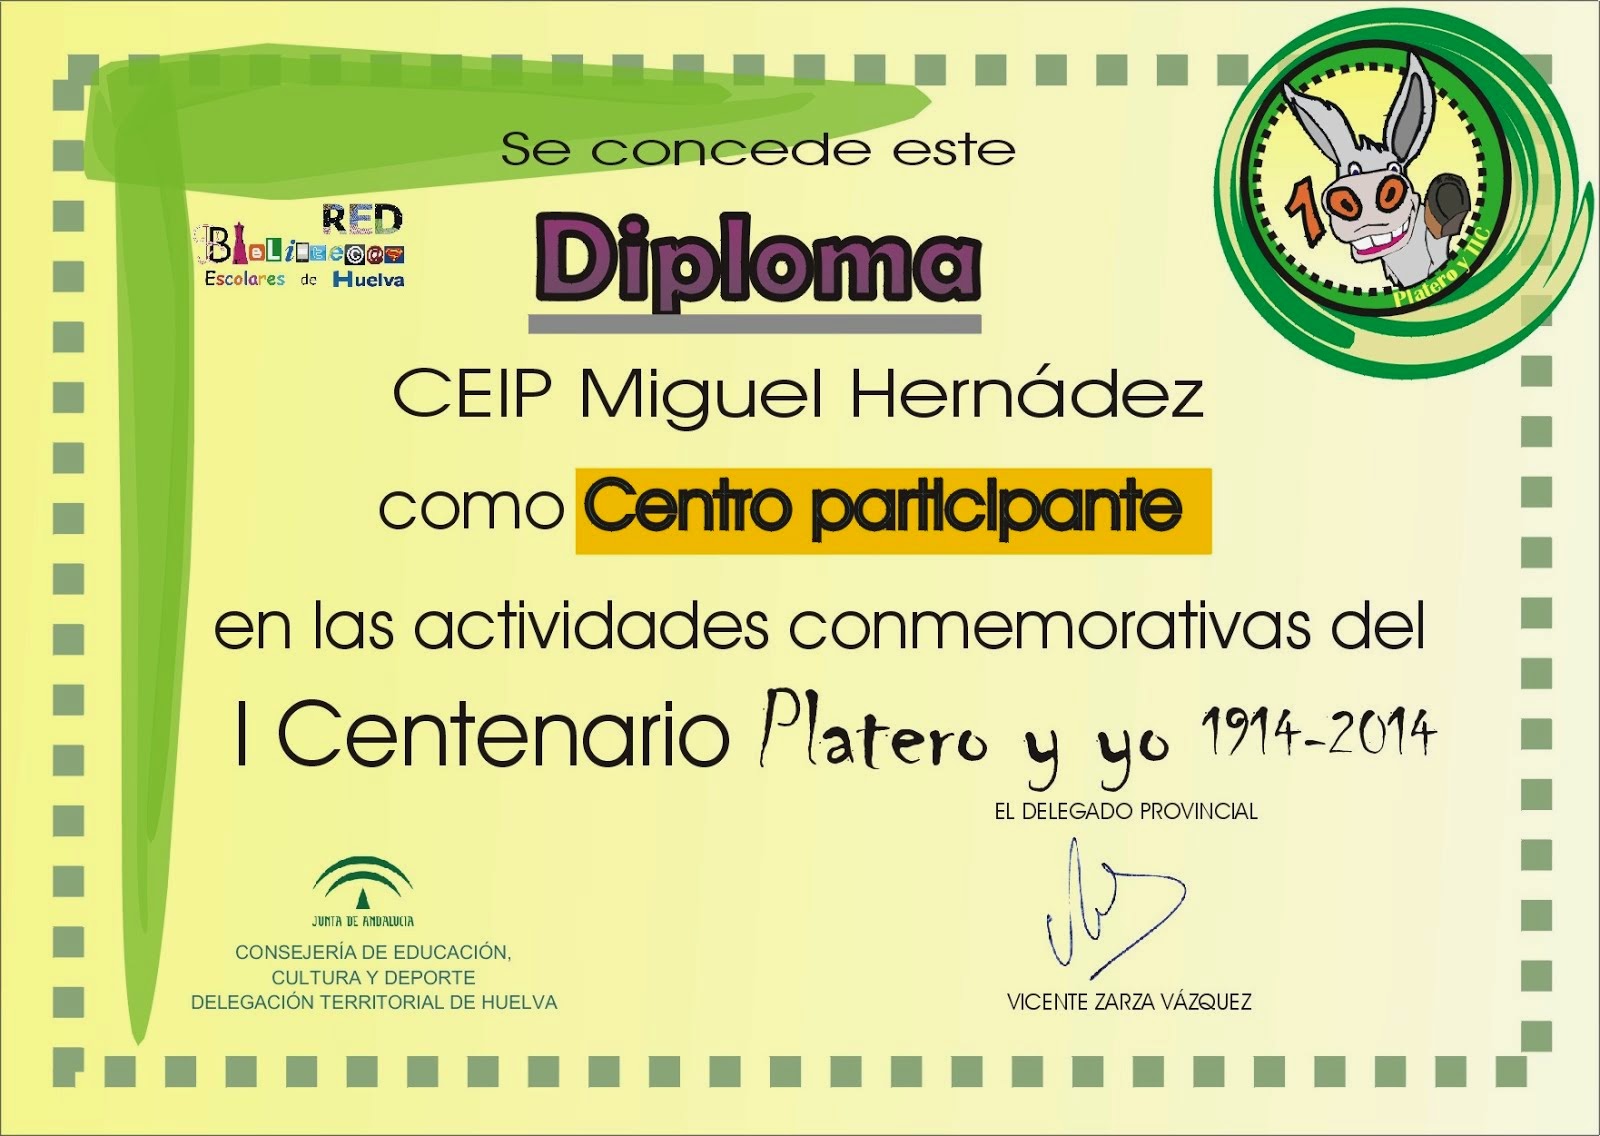 Diploma de participación en el  "Centenario de Platero y yo" de la Junta de Andalucía